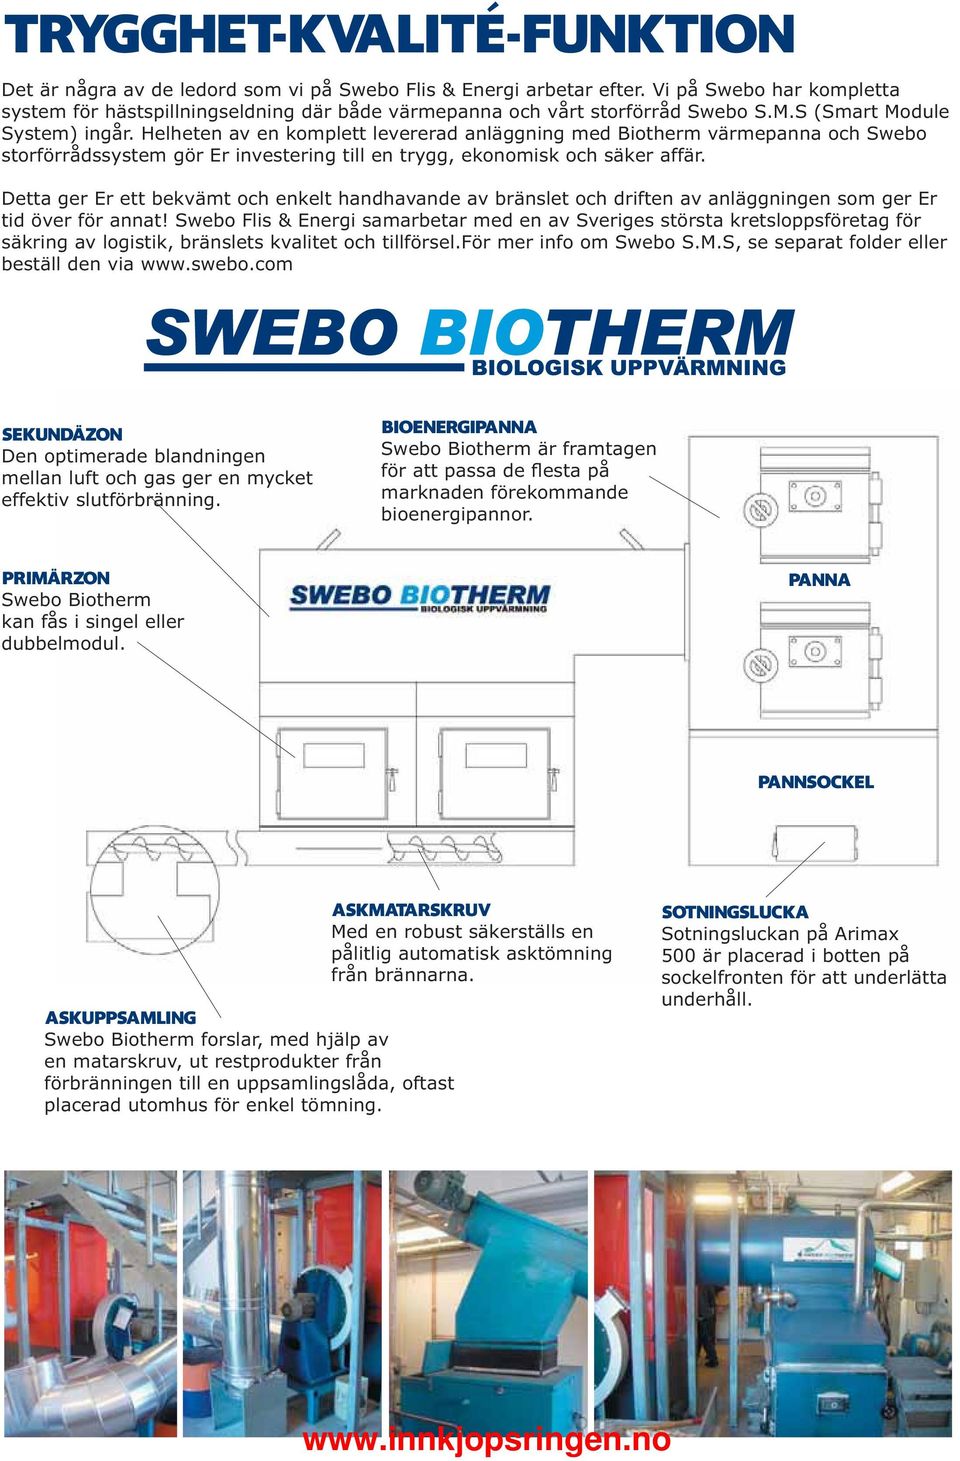 Helheten av en komplett levererad anläggning med Biotherm värmepanna och Swebo storförrådssystem gör Er investering till en trygg, ekonomisk och säker affär.